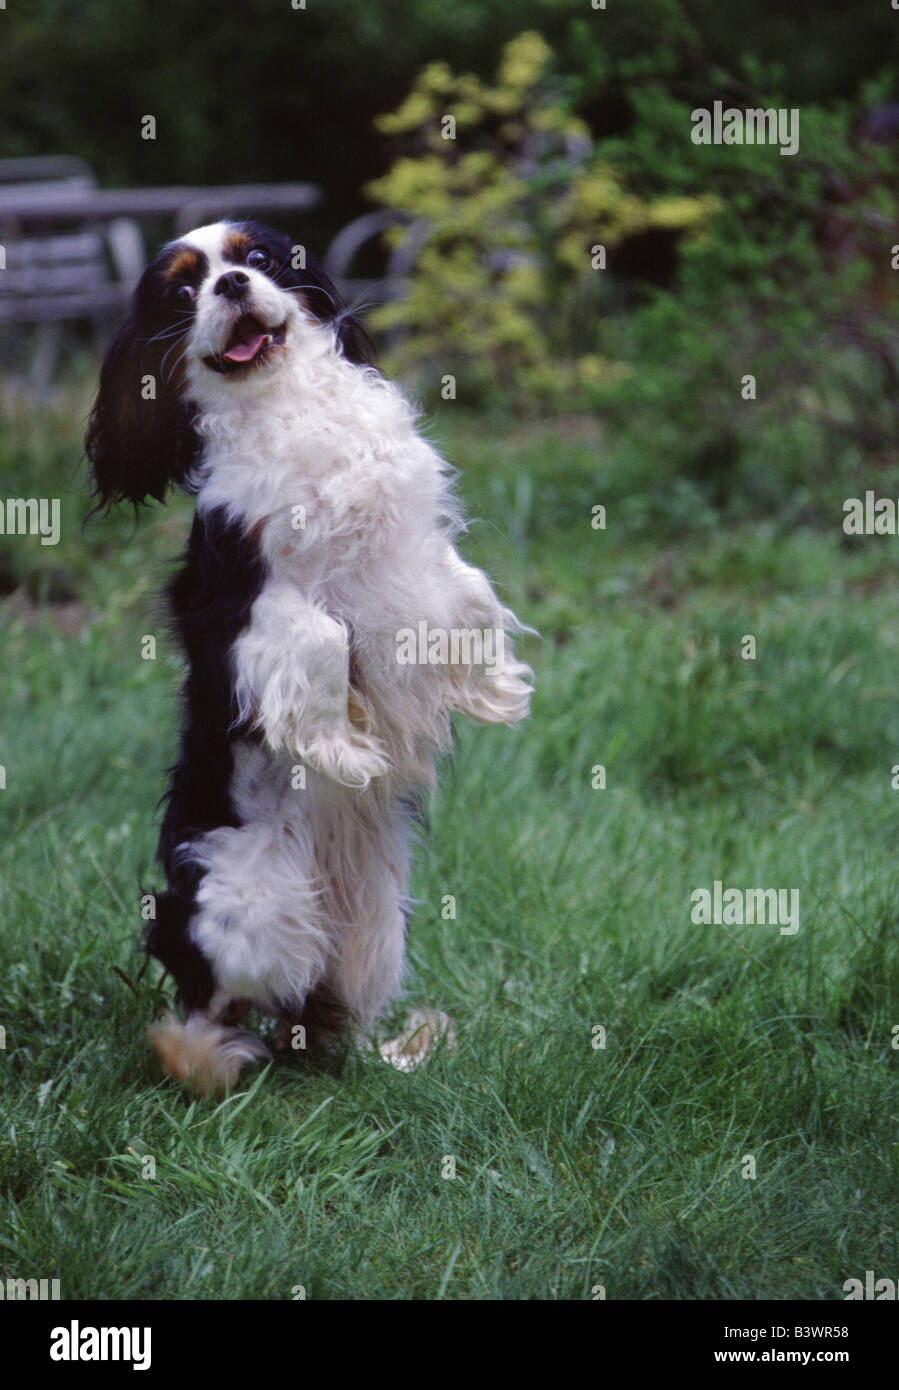 Animales bailando fotografías e imágenes de alta resolución - Página 6 -  Alamy